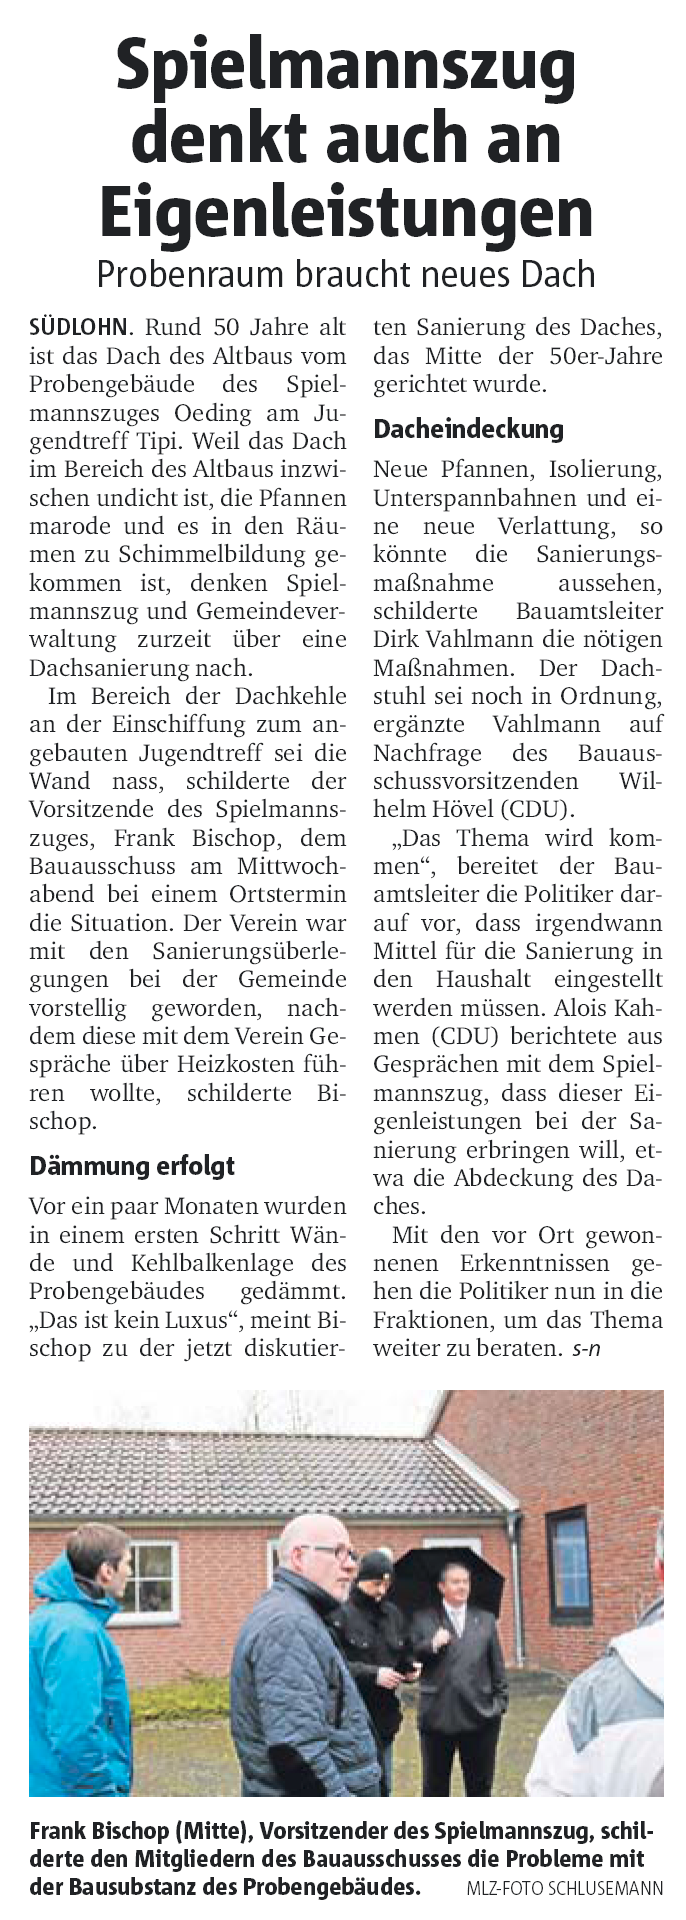 Münsterland Zeitung 28.02.2015 | Spielmannszug denkt auch an Eigenleistungen - Probenheim braucht neues Dach